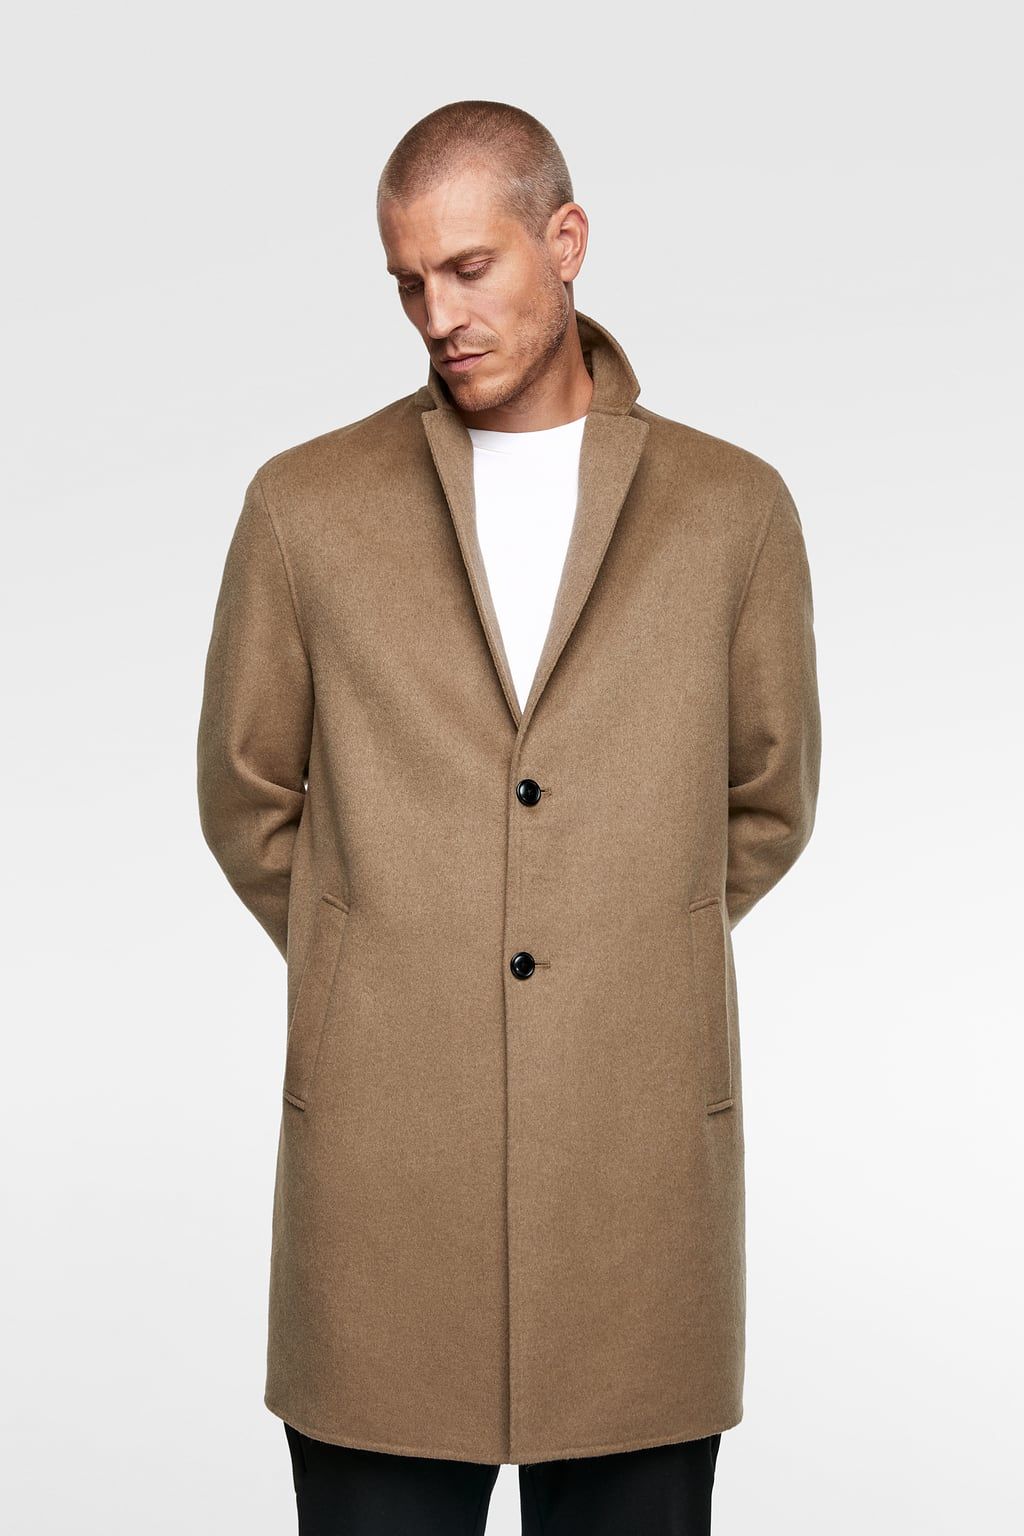 MODA UOMO Cappotti Impermeabile Nero XL Berkeley Furs Cappotti lunghi sconto 34% 